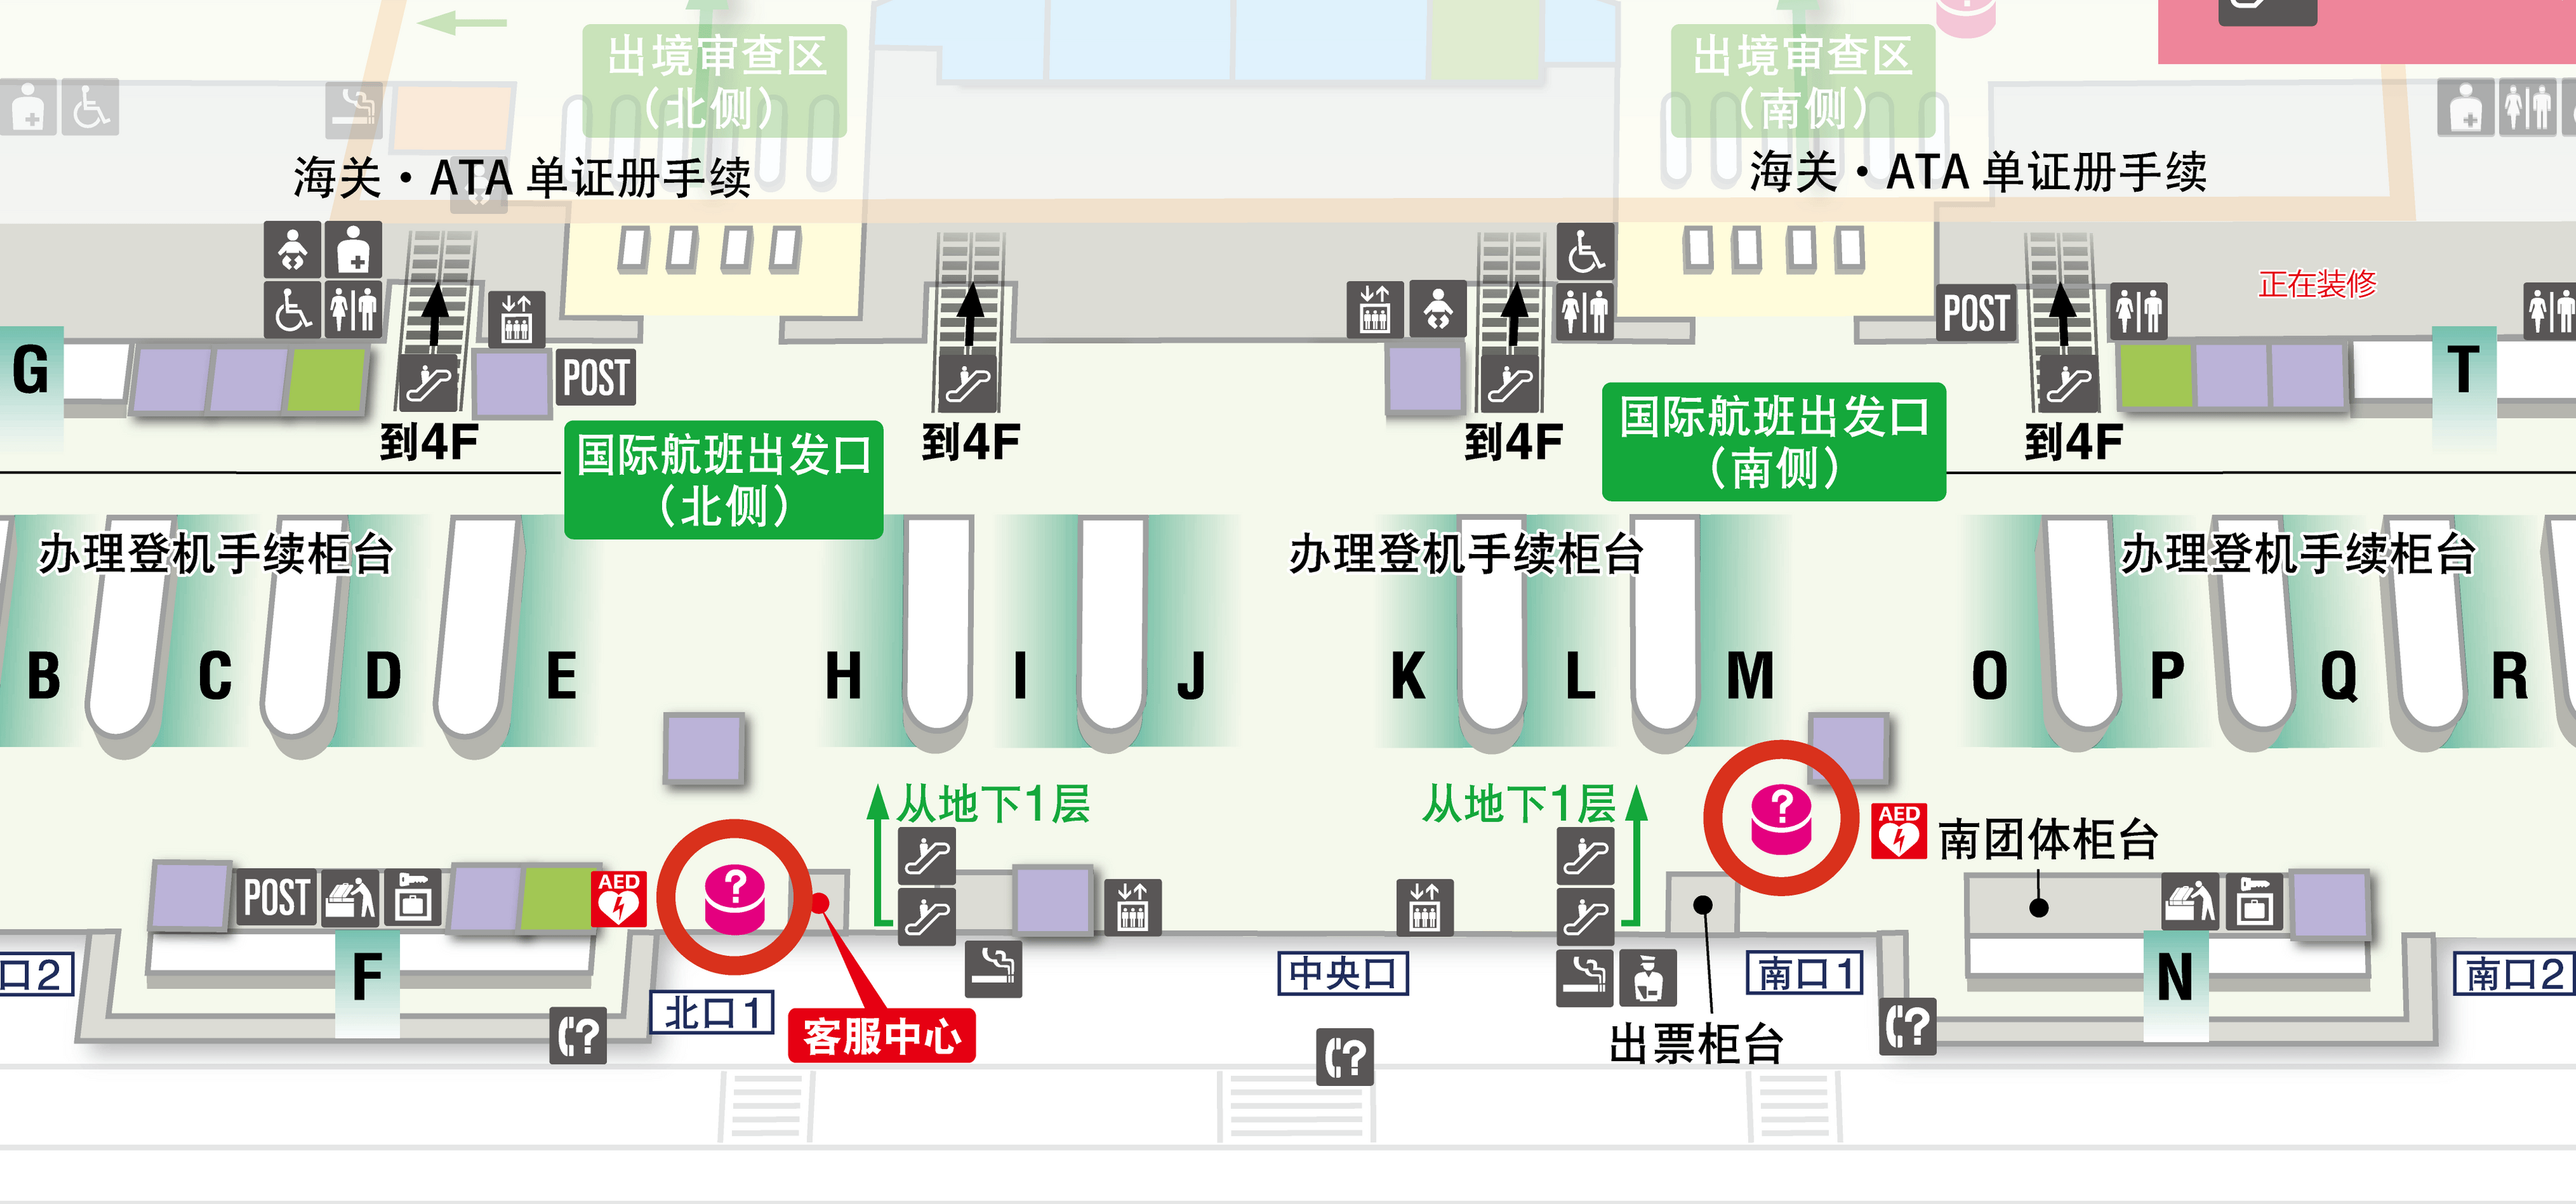 第2航站楼 3楼 国际出发大厅 楼层地图图示